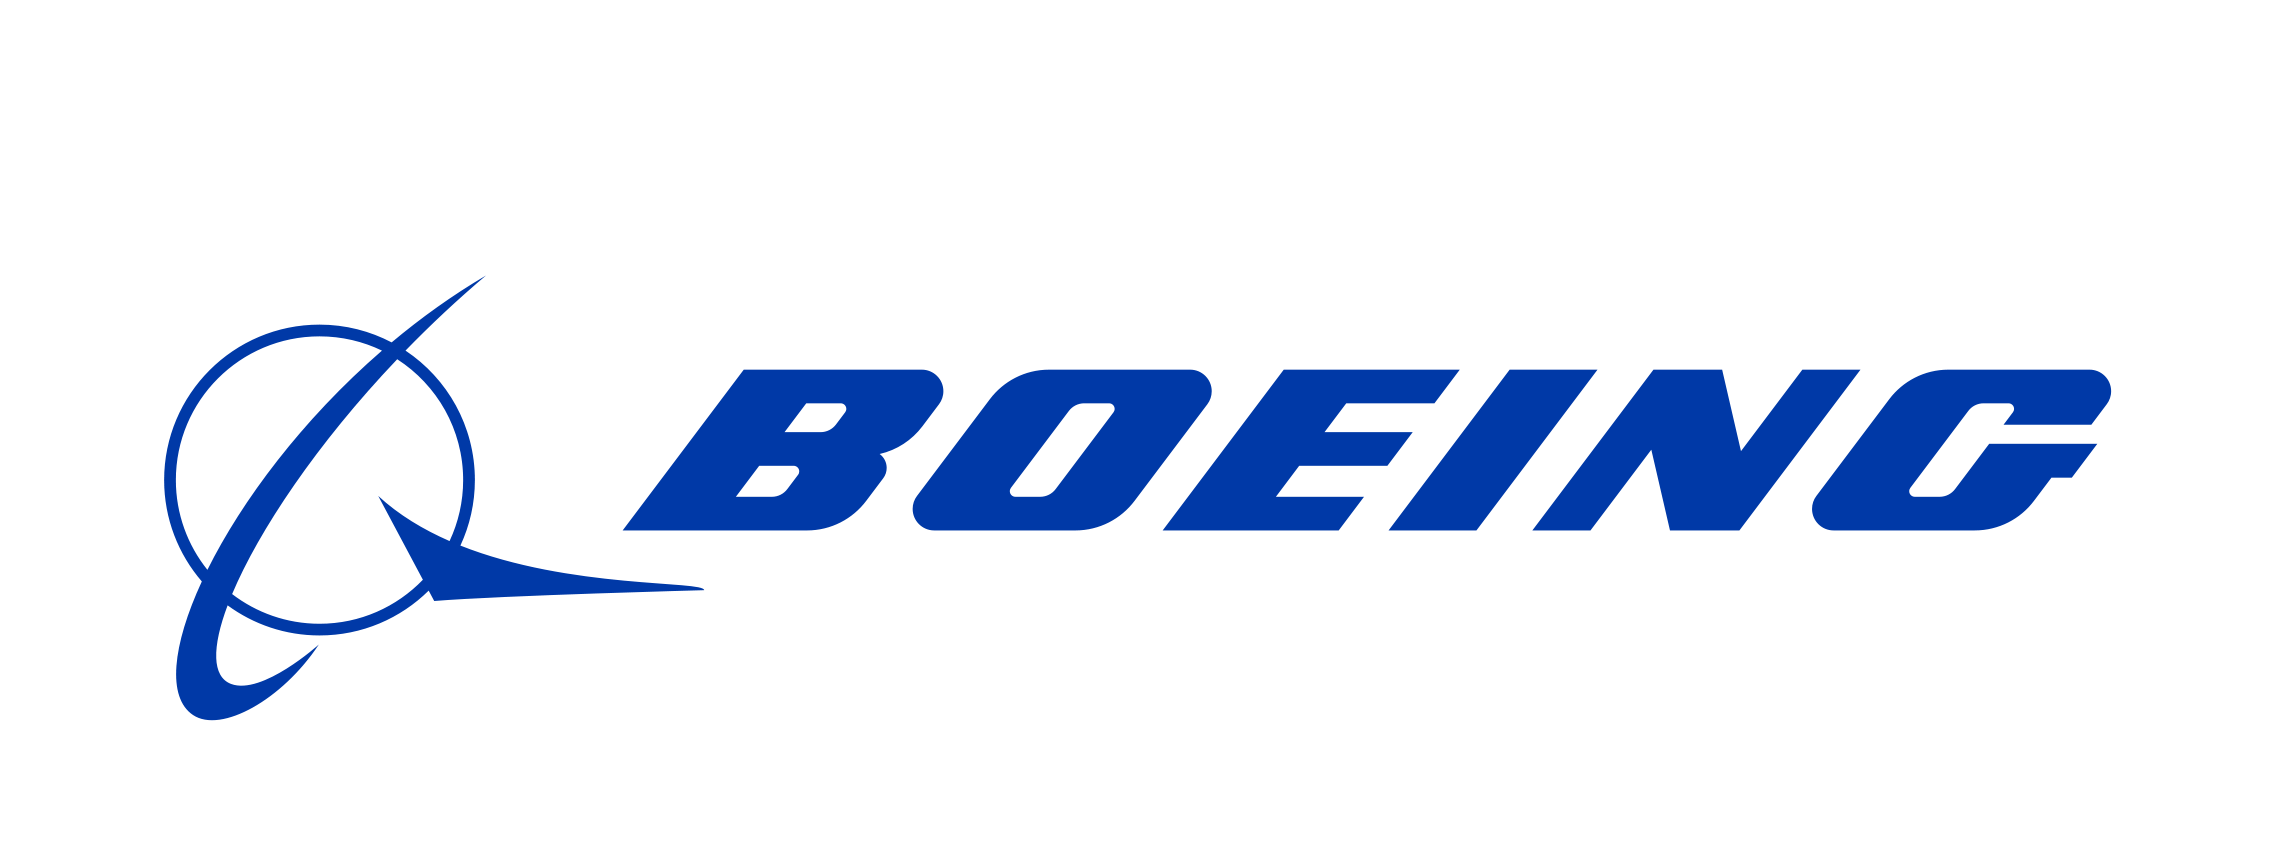 boeing logo clear